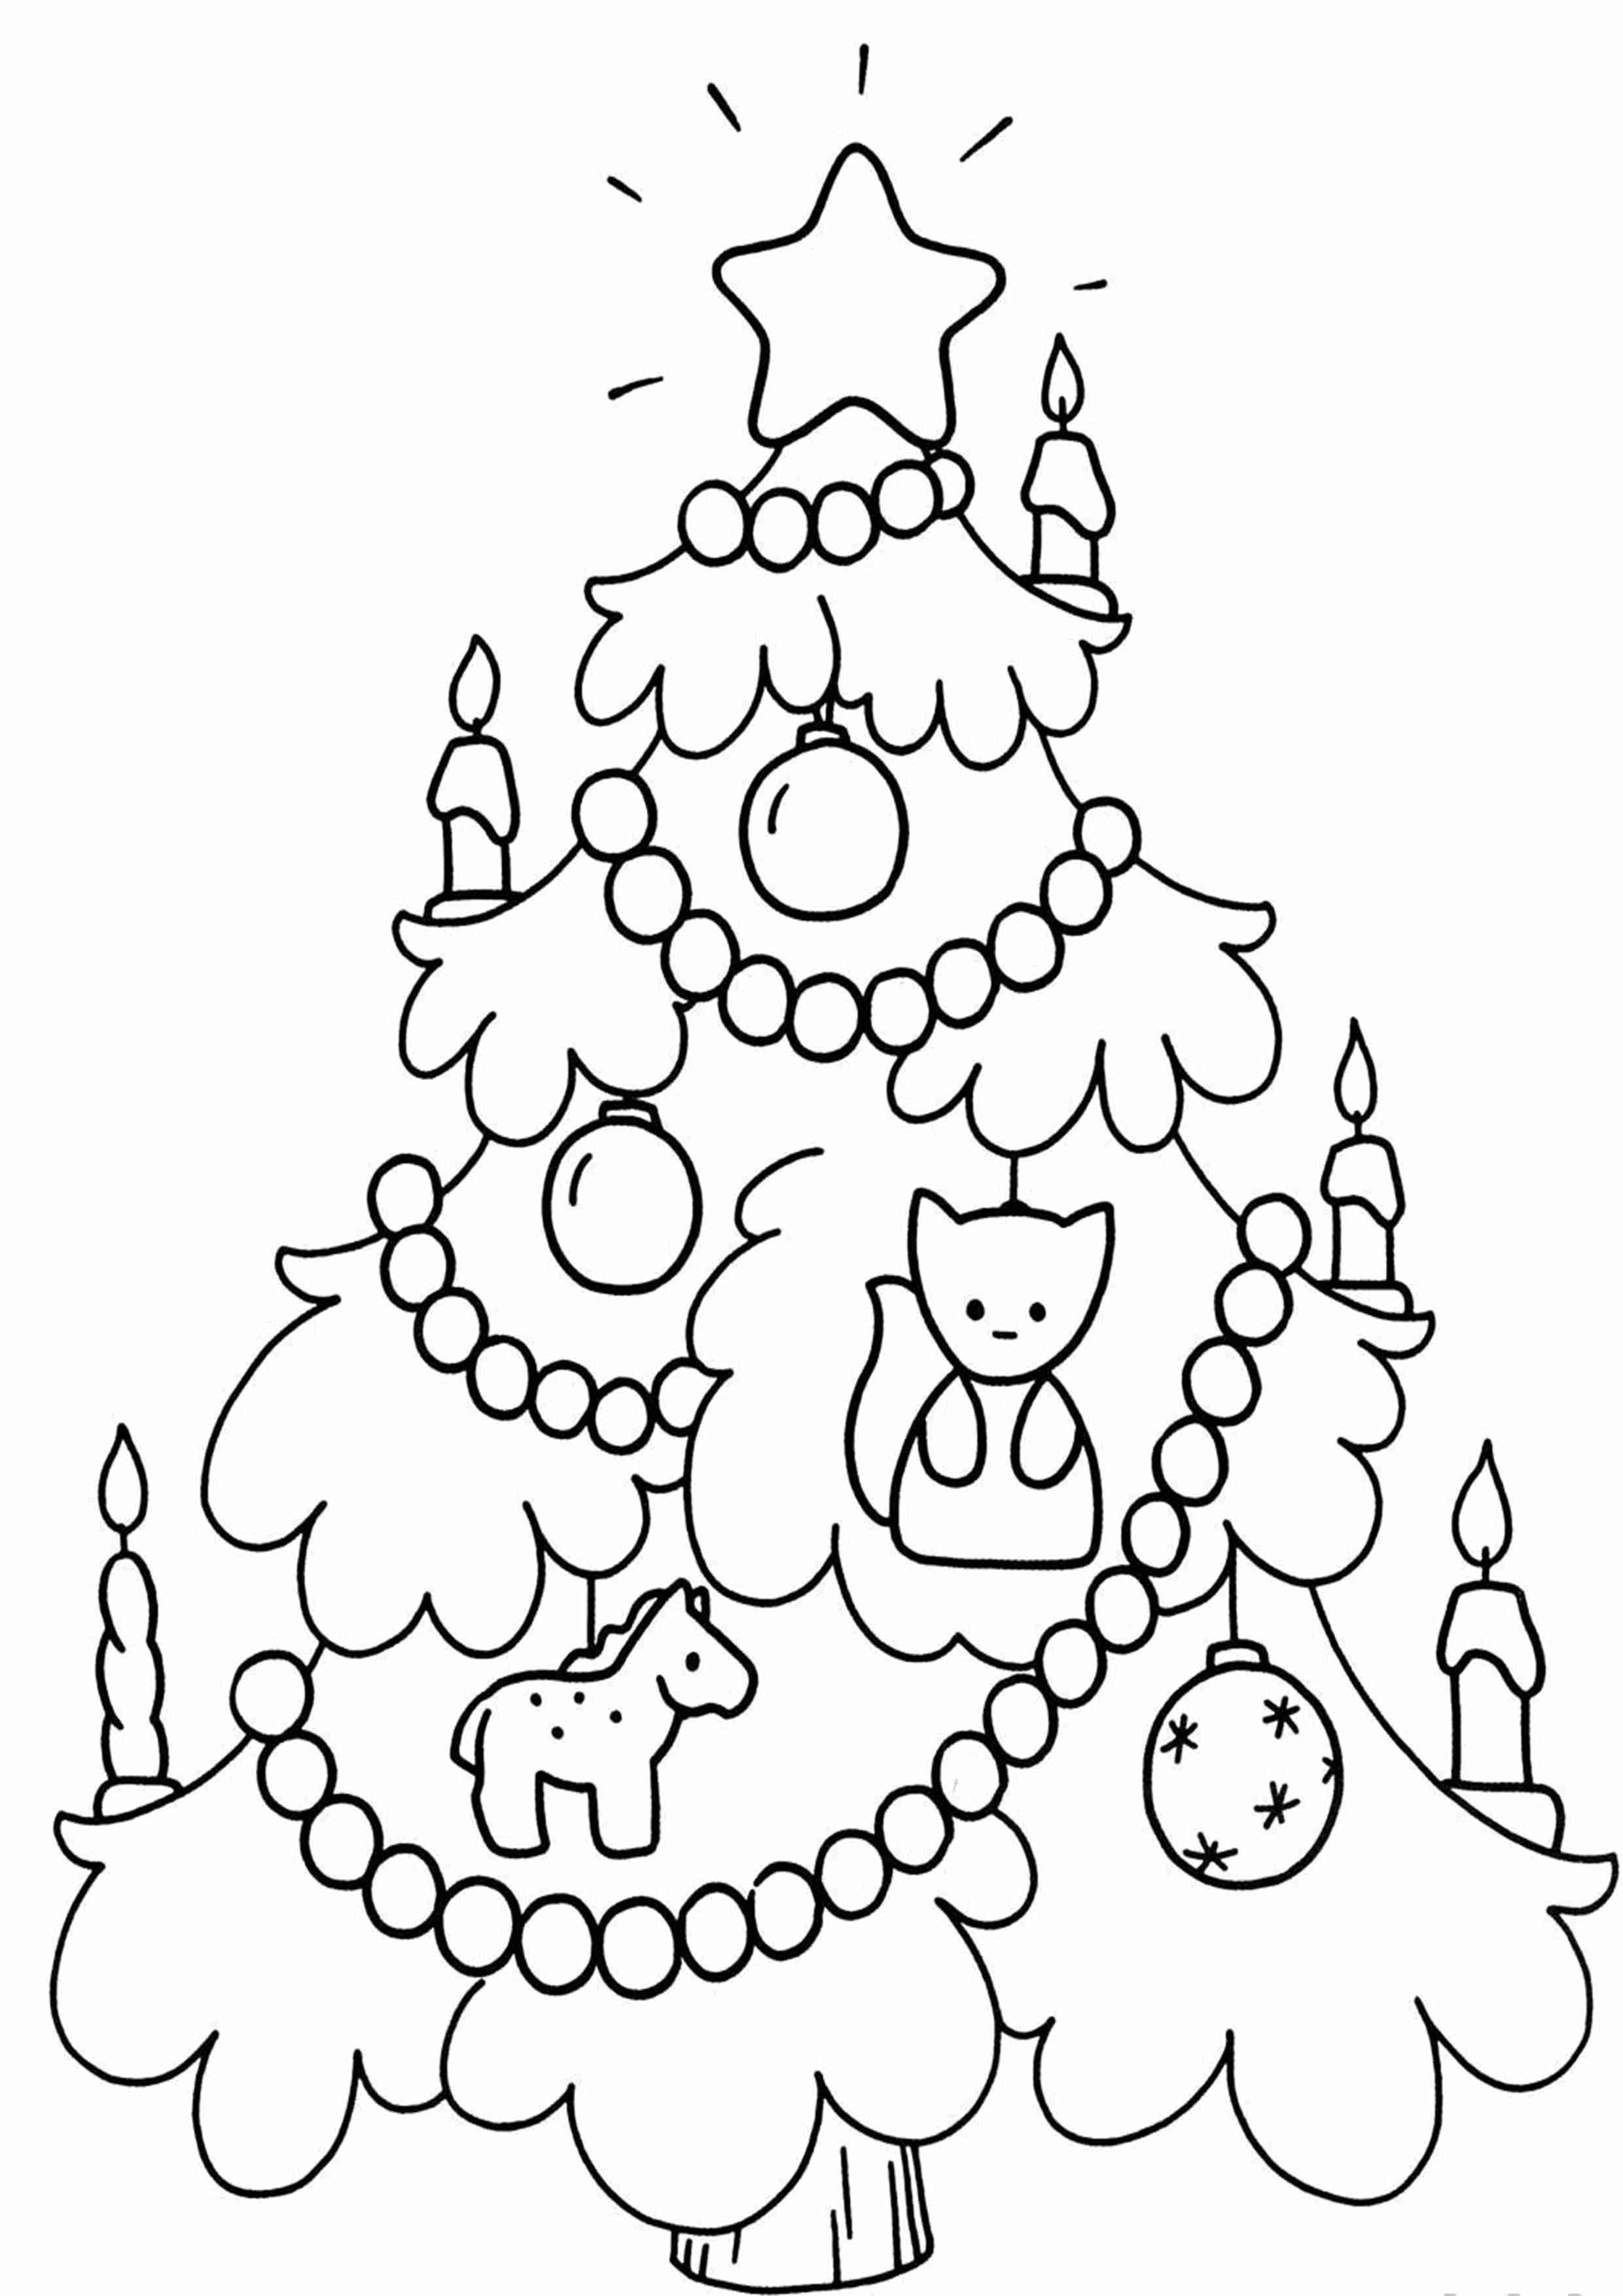 Раскраска экзотическая новогодняя елка для детей 3-4 лет